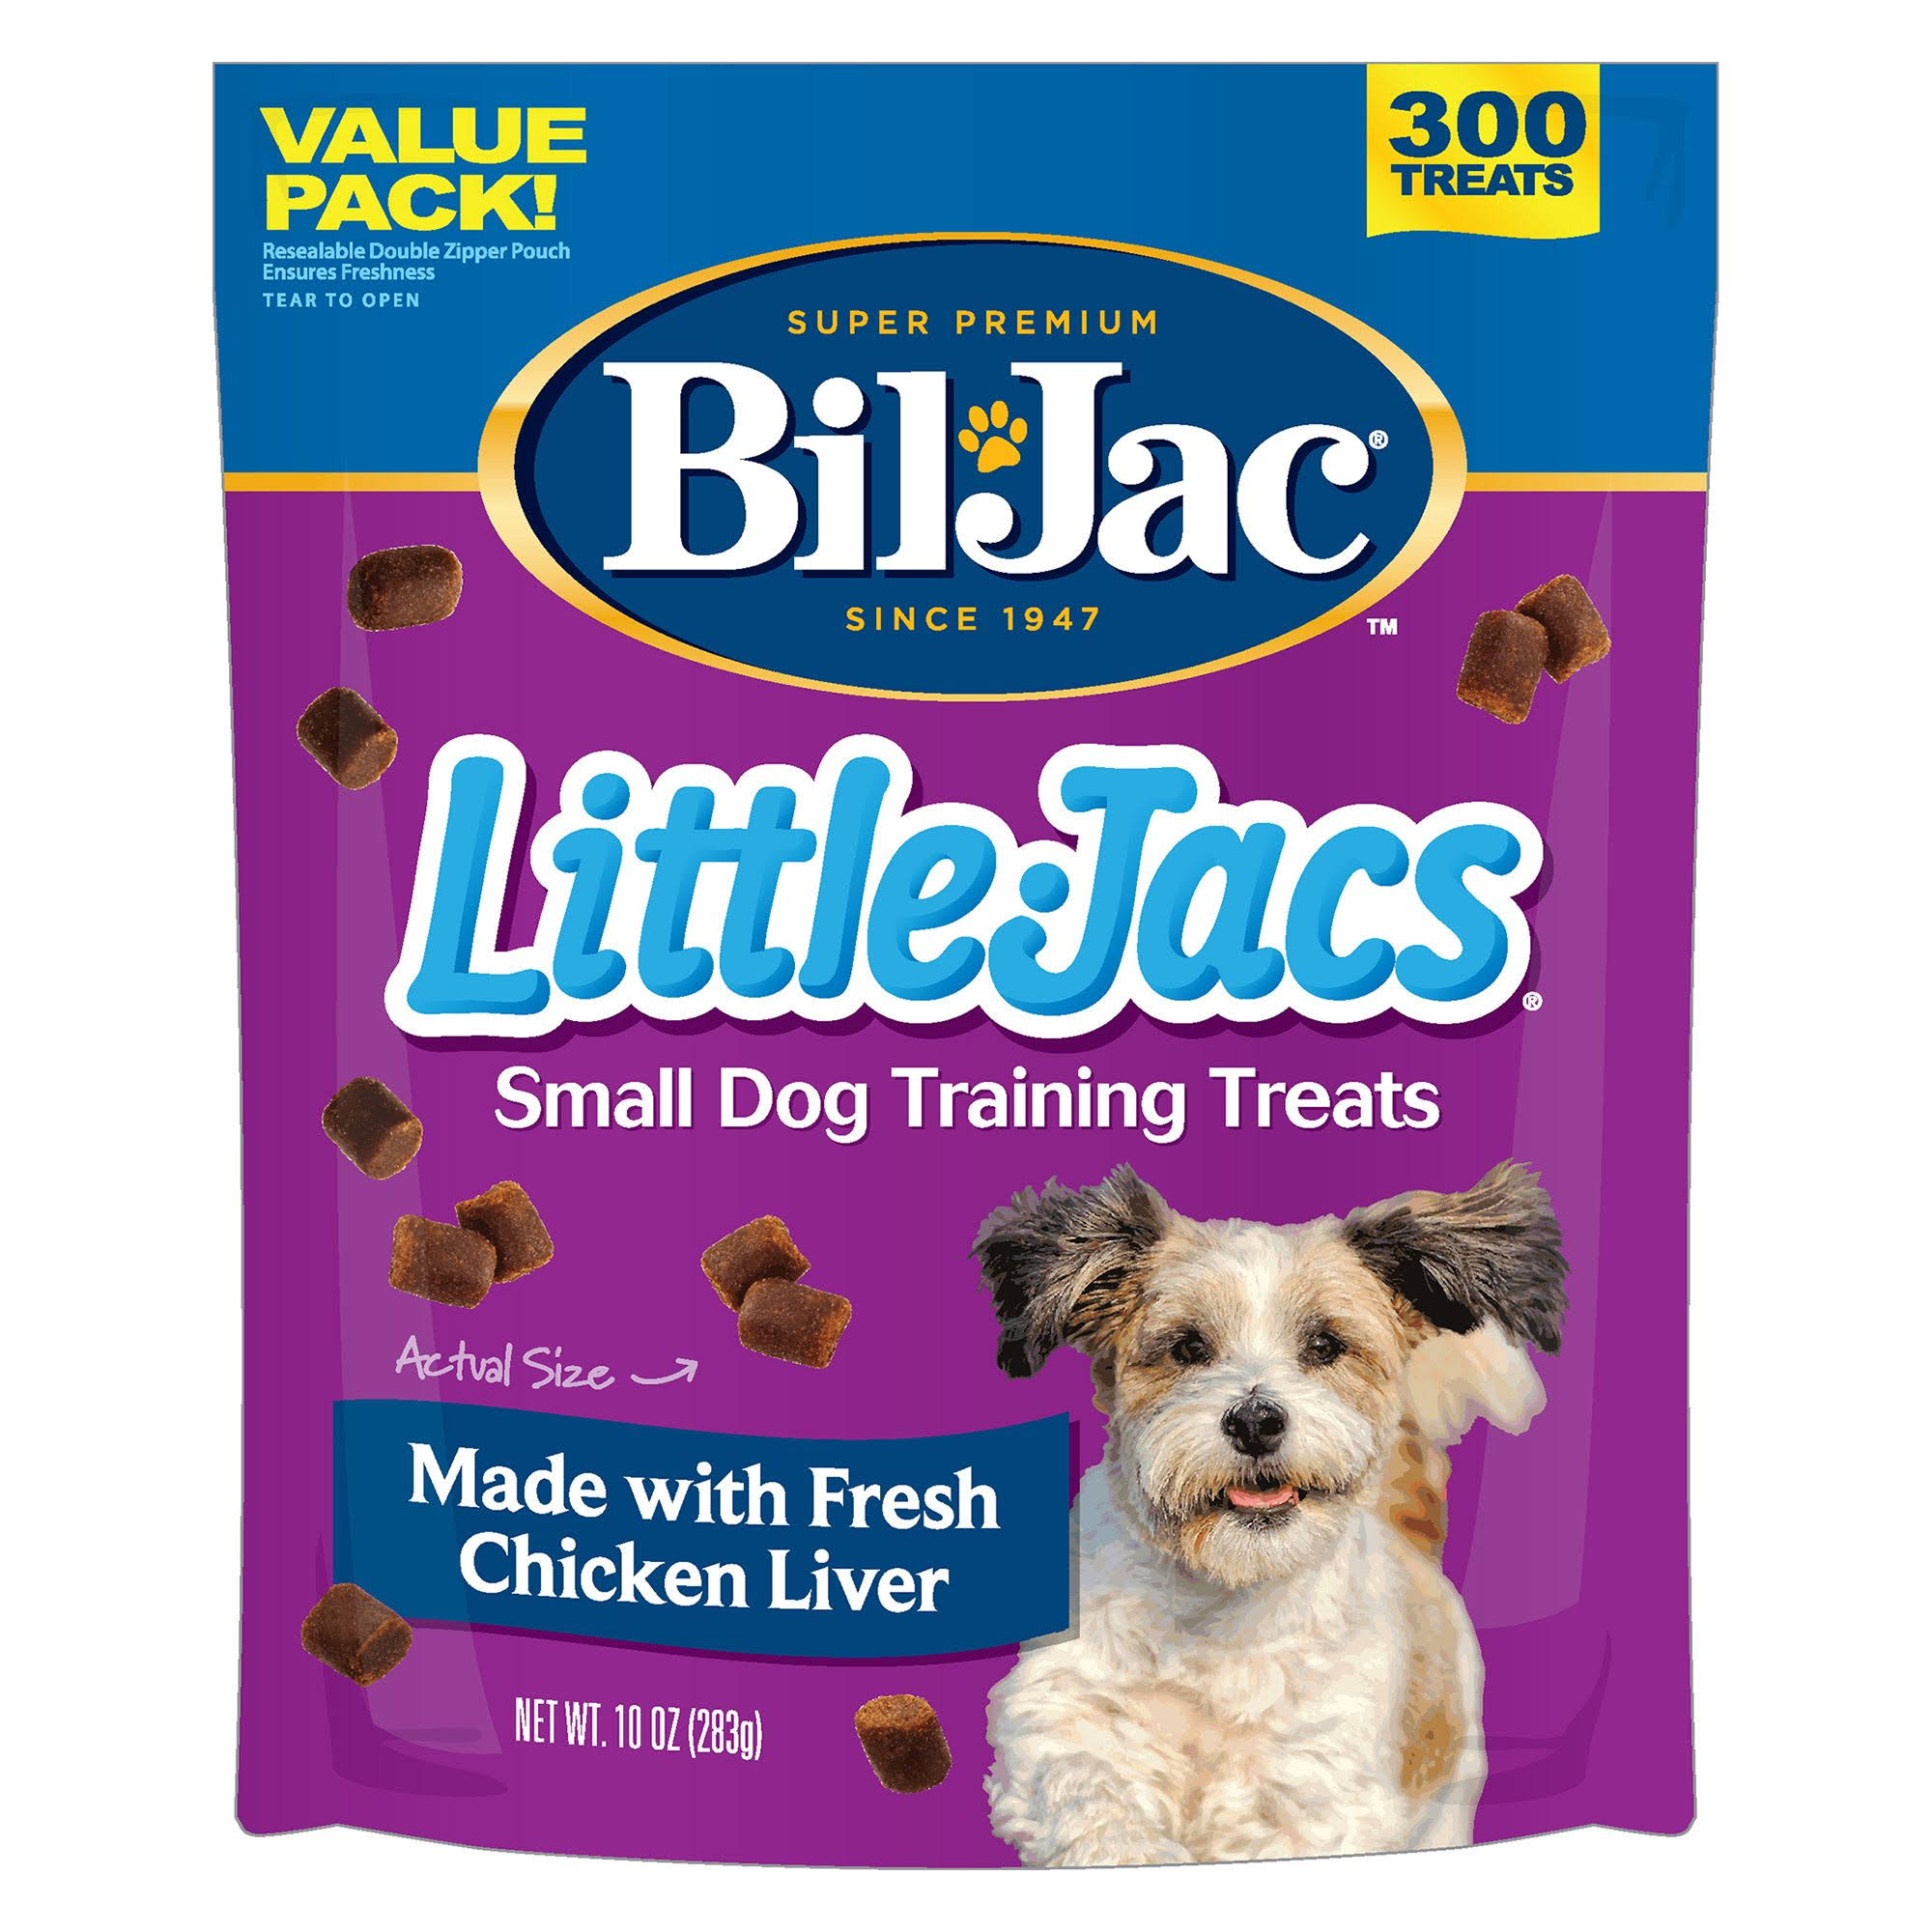 Bil-Jac Little Jacs Small Dog Treats - Liver